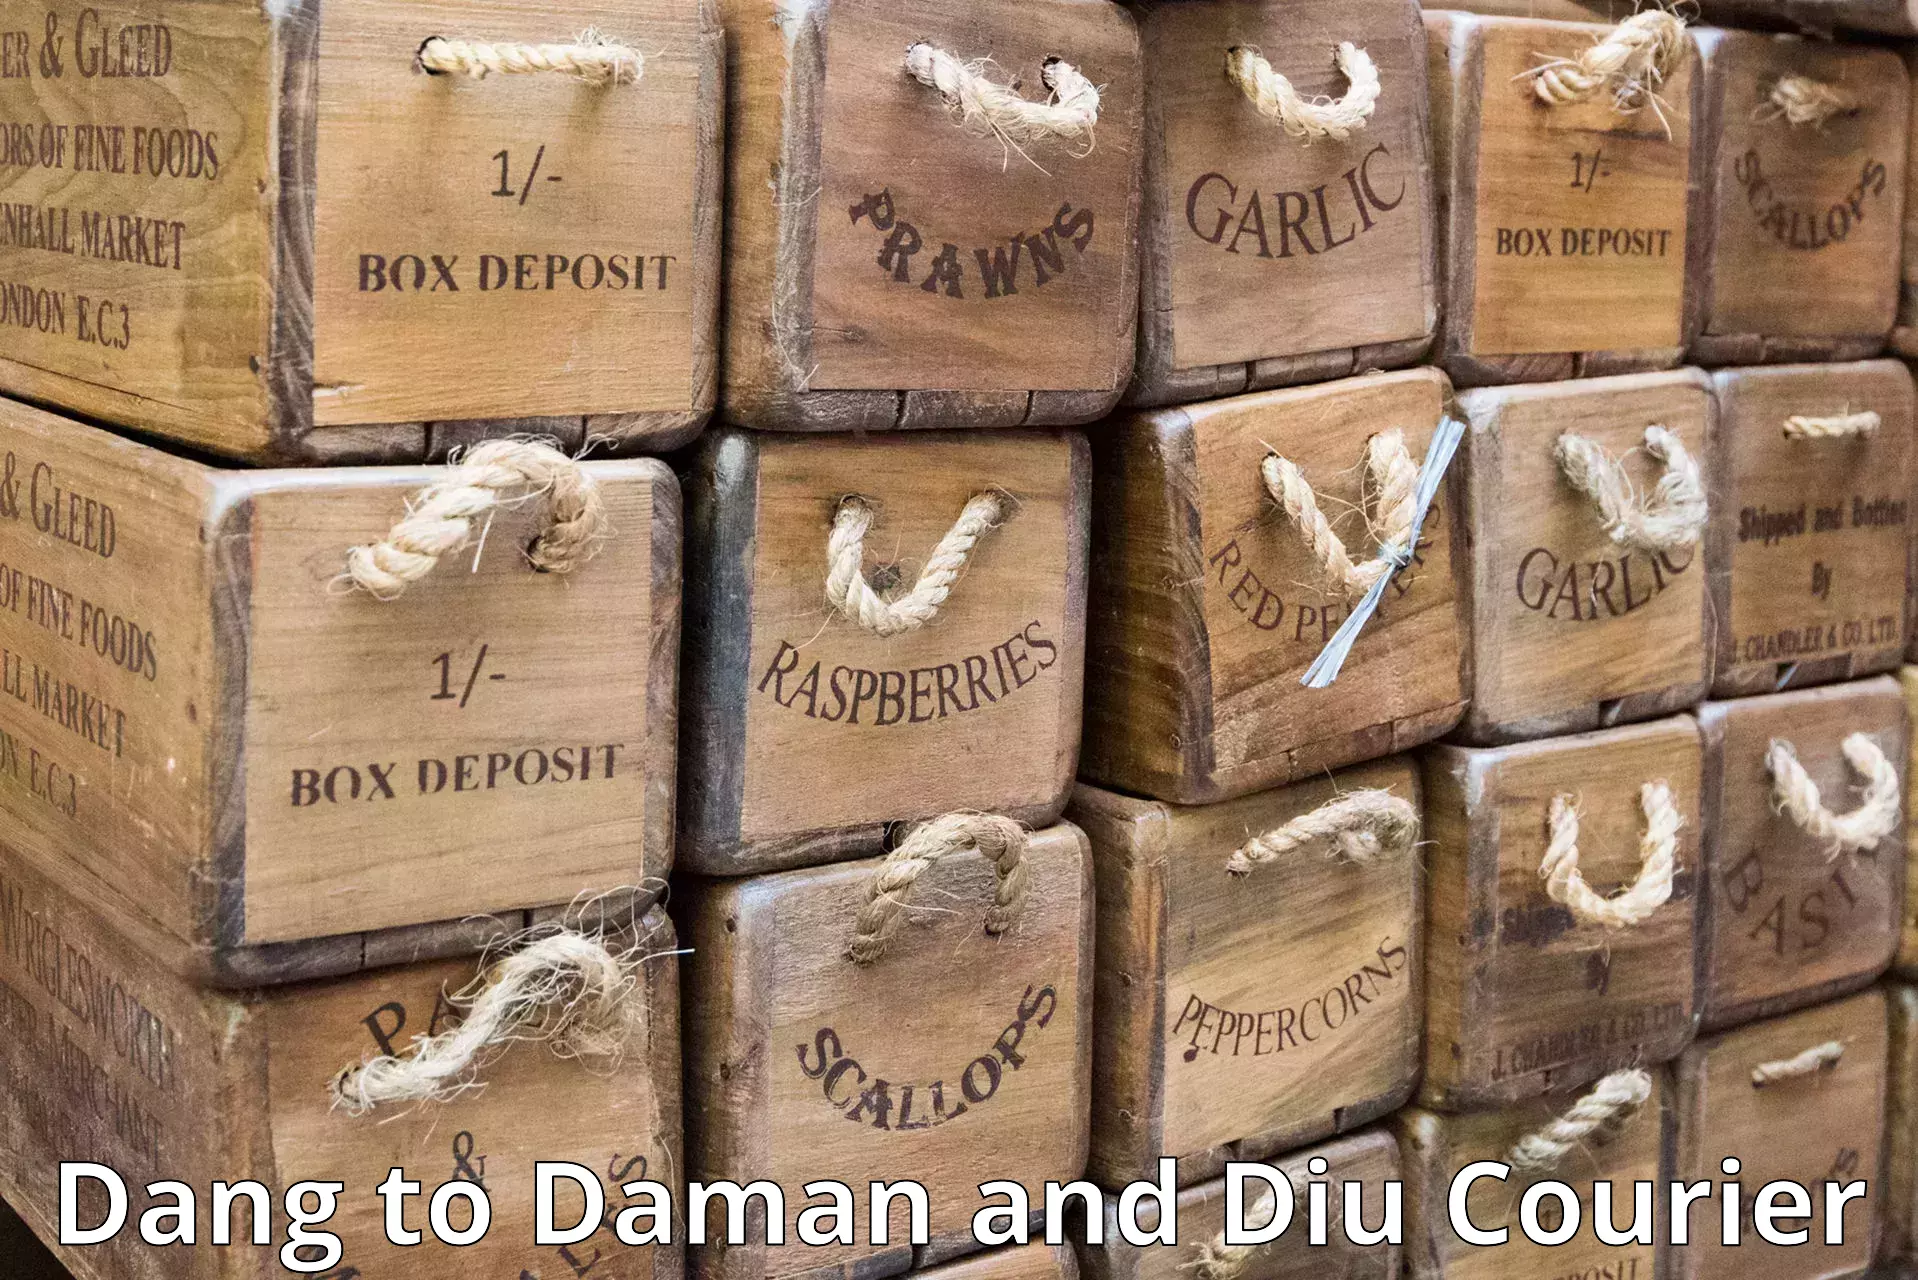 Efficient order fulfillment in Dang to Daman and Diu